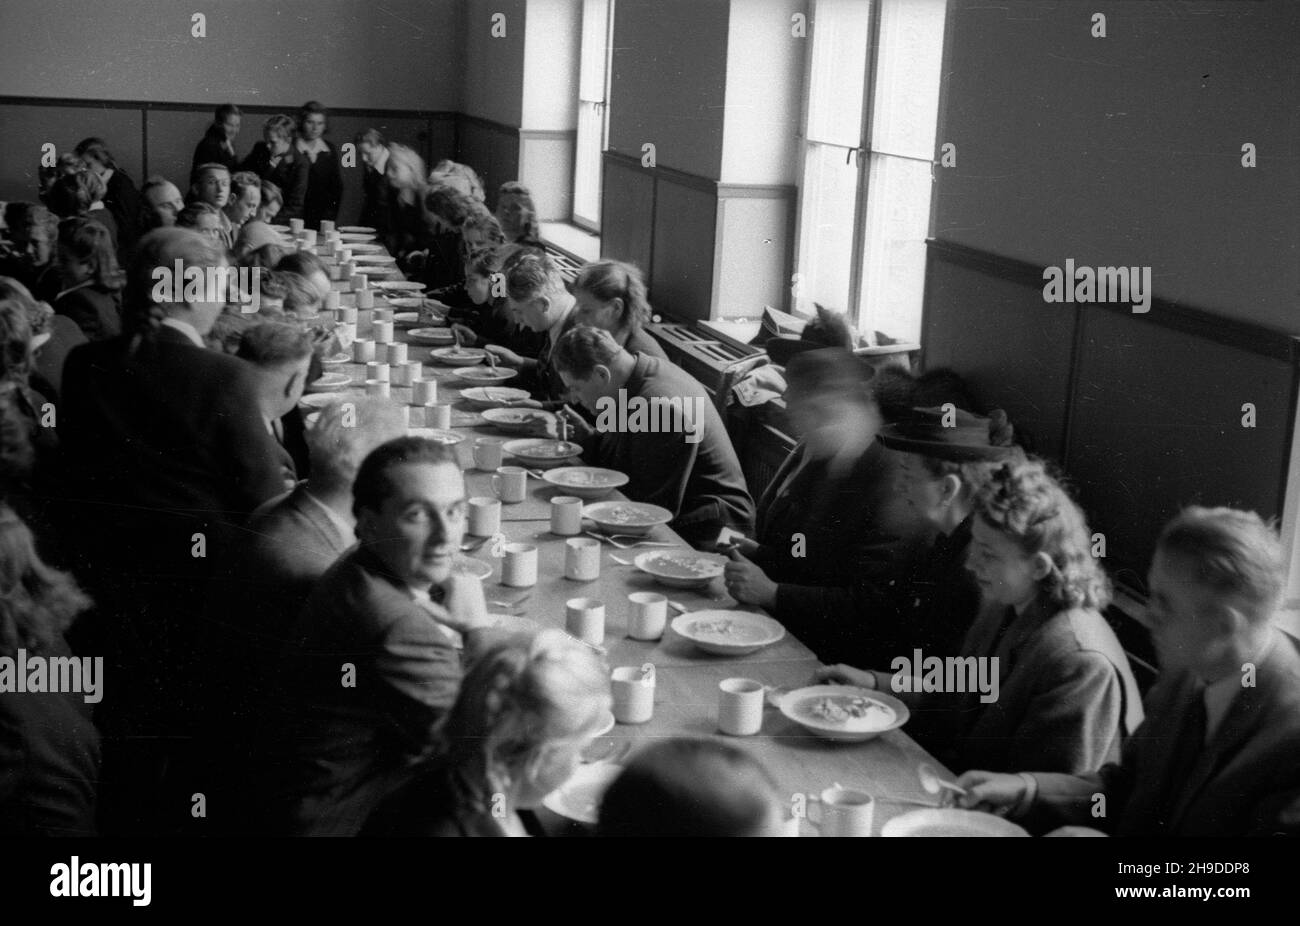 Zielona Góra, 1947-09-28. Wizyta przedstawicieli w³adz w jednej ze szkó³. Nz. wspólny posi³ek w sto³ówce. Z prawej pose³ Polskiej Partii Socjalistycznej (PPS) Edward Osóbka-Morawski (7). mb/mgs  PAP      Zielona Gora, Sept. 28, 1947. A visit of government officials at a school. Pictured: a meal at a canteen. On the right MP of Polish Socialist Party (PPS) Edward Osobka-Morawski (7).  bk/mgs  PAP Stock Photo